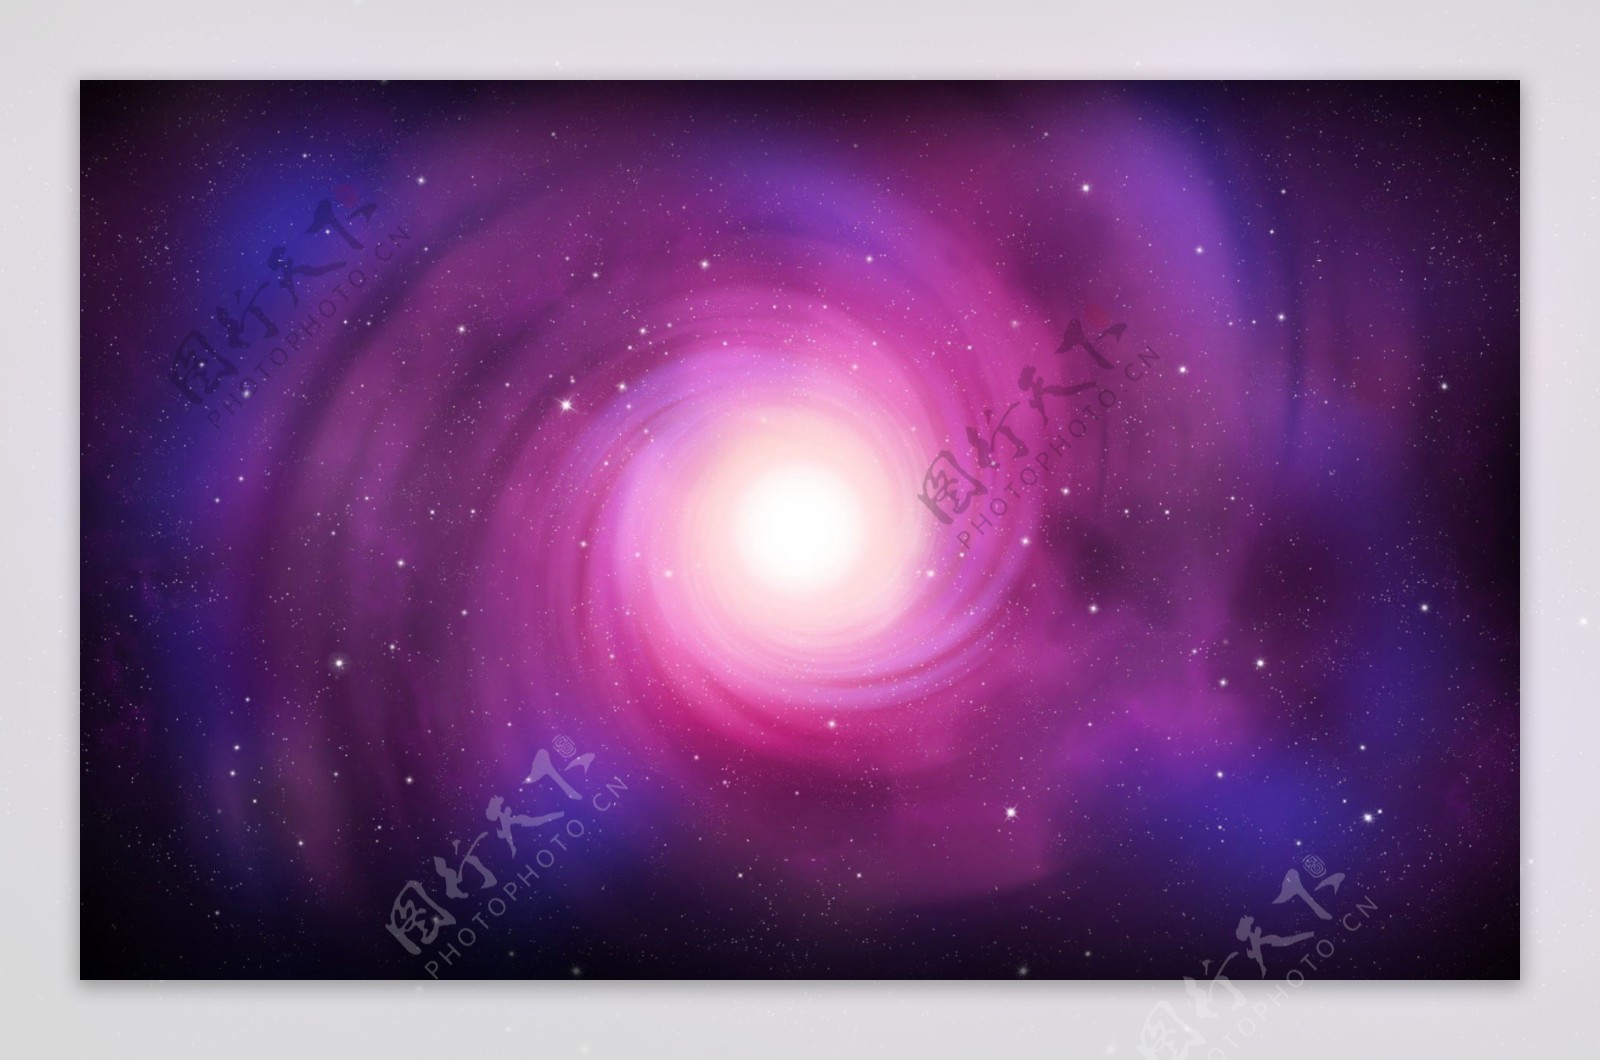 紫色渐变星系背景